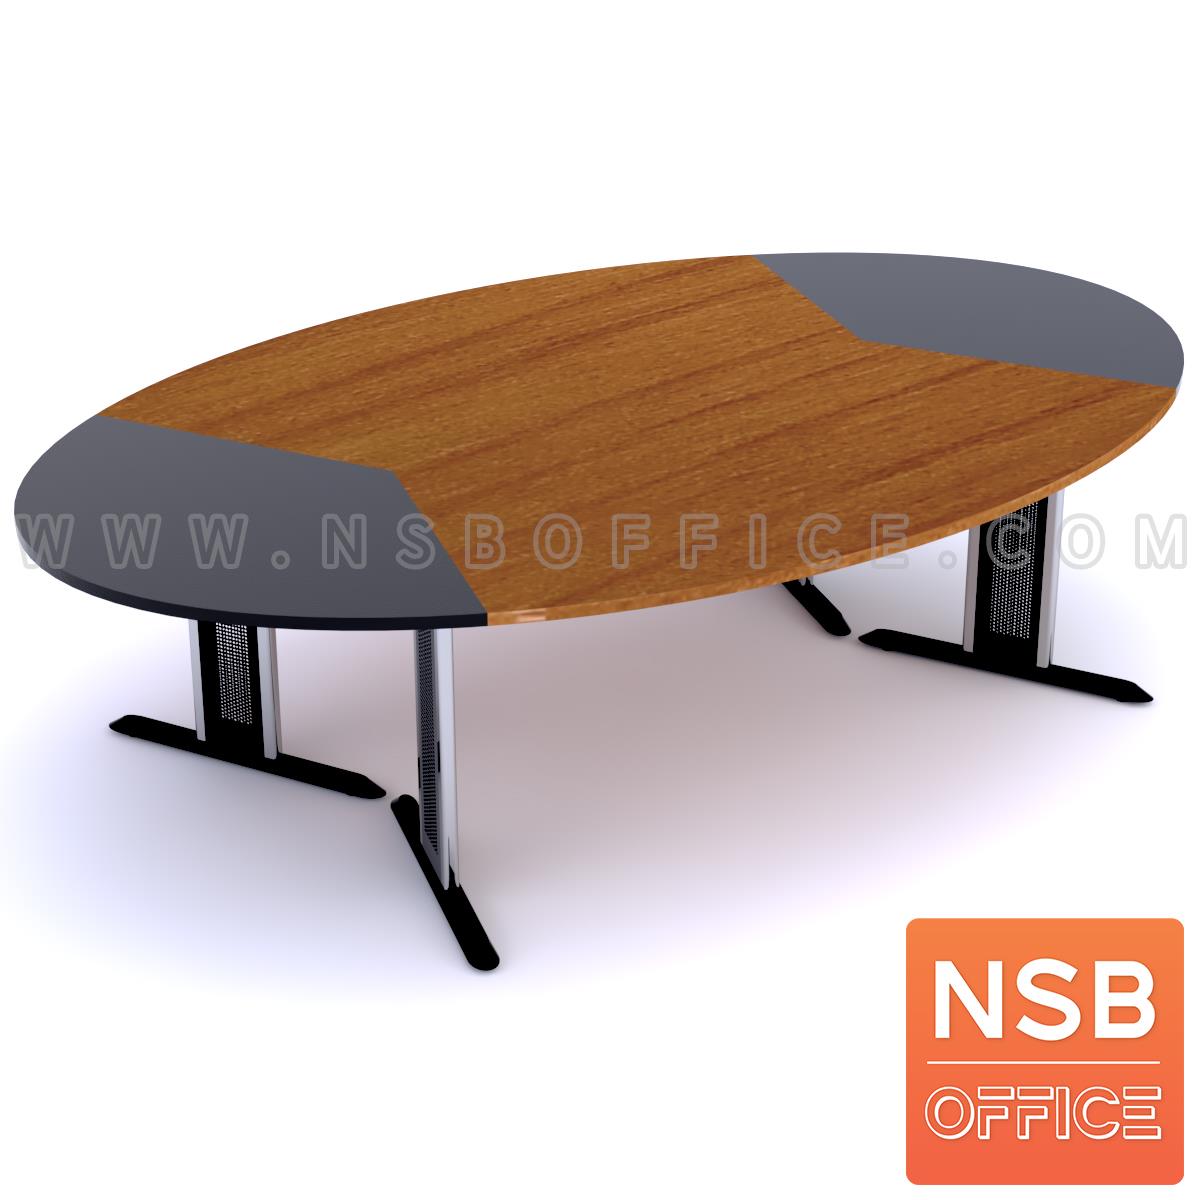 A05A010:โต๊ะประชุมทรงวงรี   10, 12 ที่นั่ง ขนาด 260W, 280W cm. ขาเหล็กตัวที